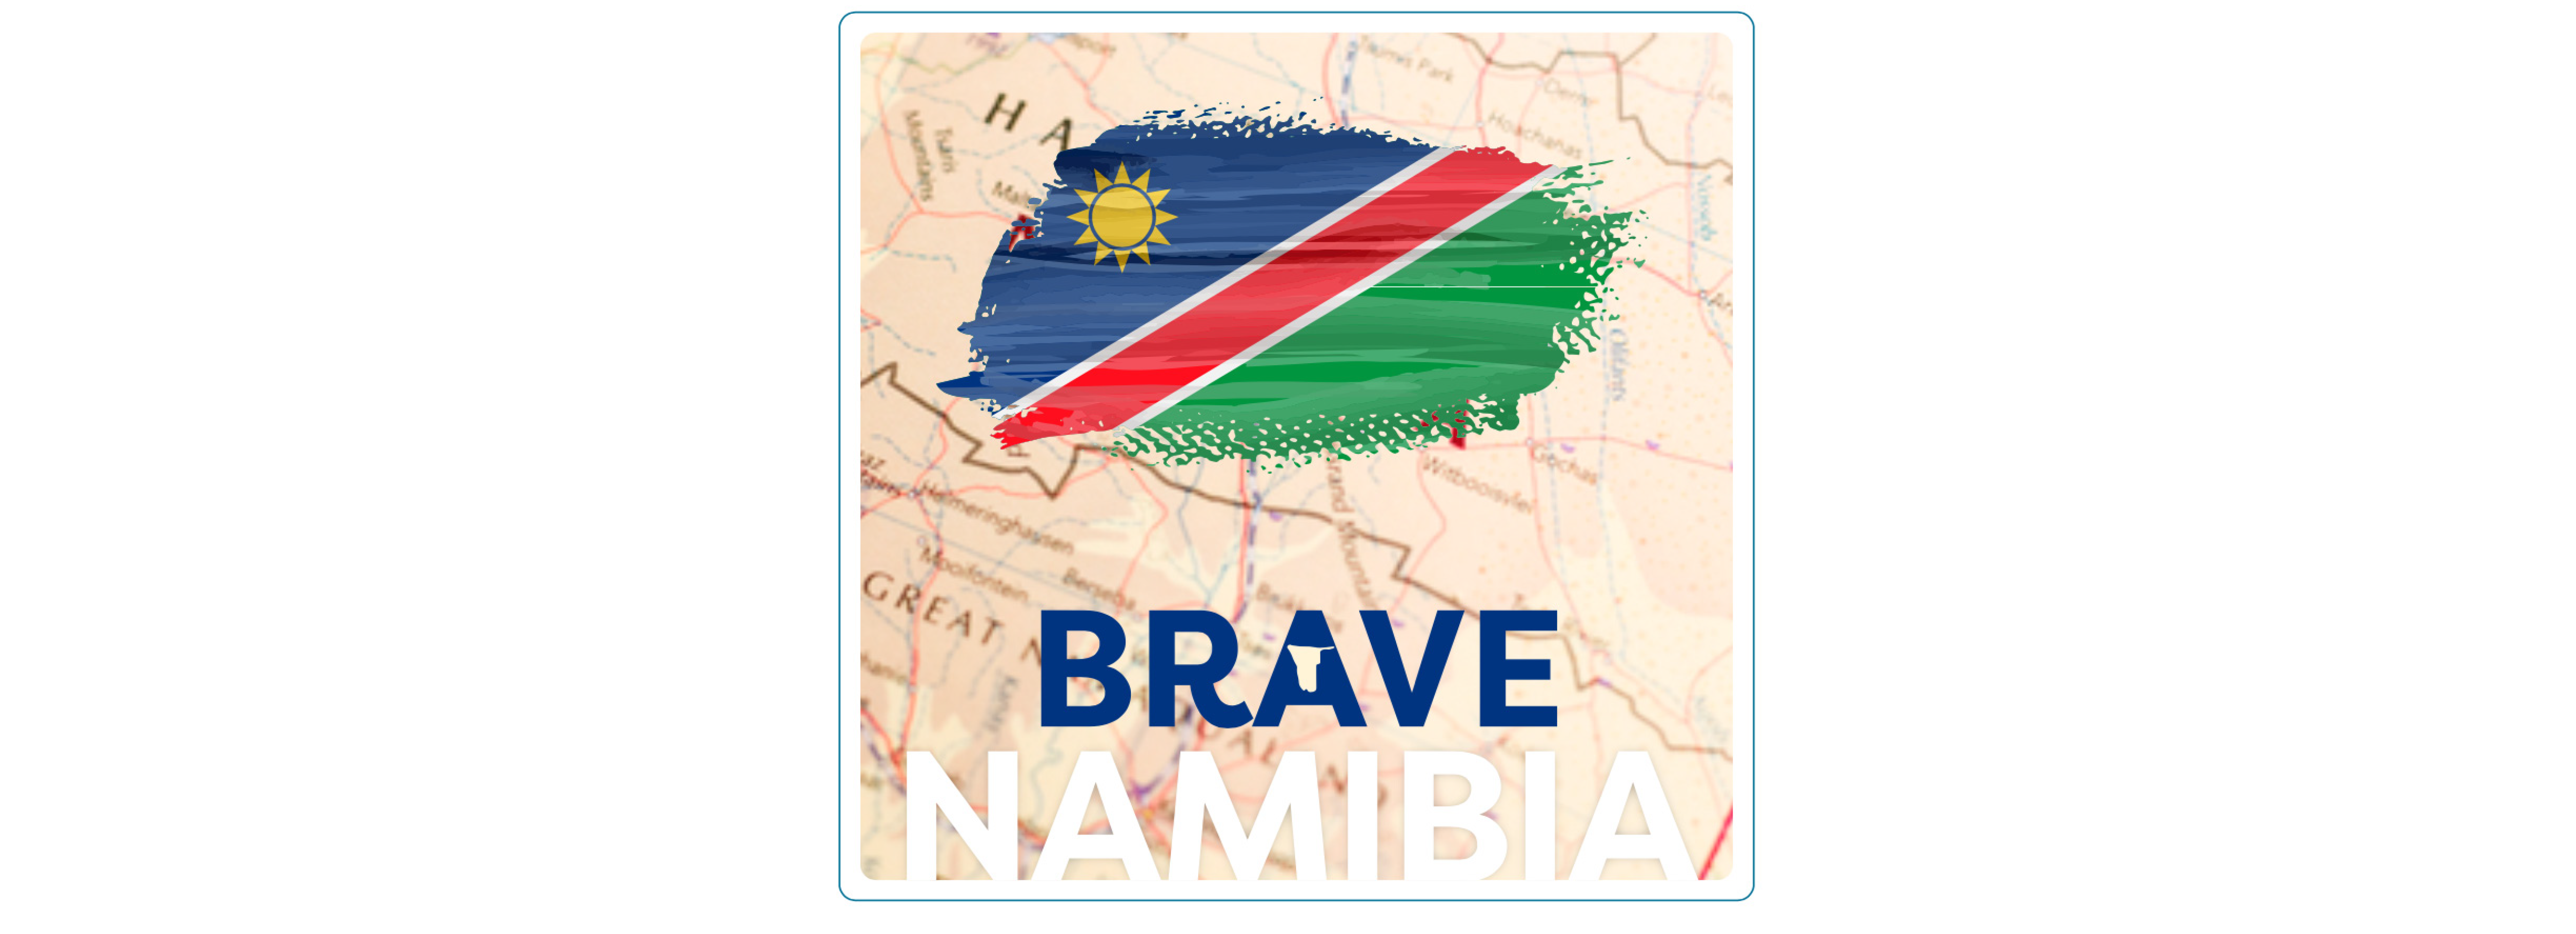 Brave Namibia - 29 September 2021